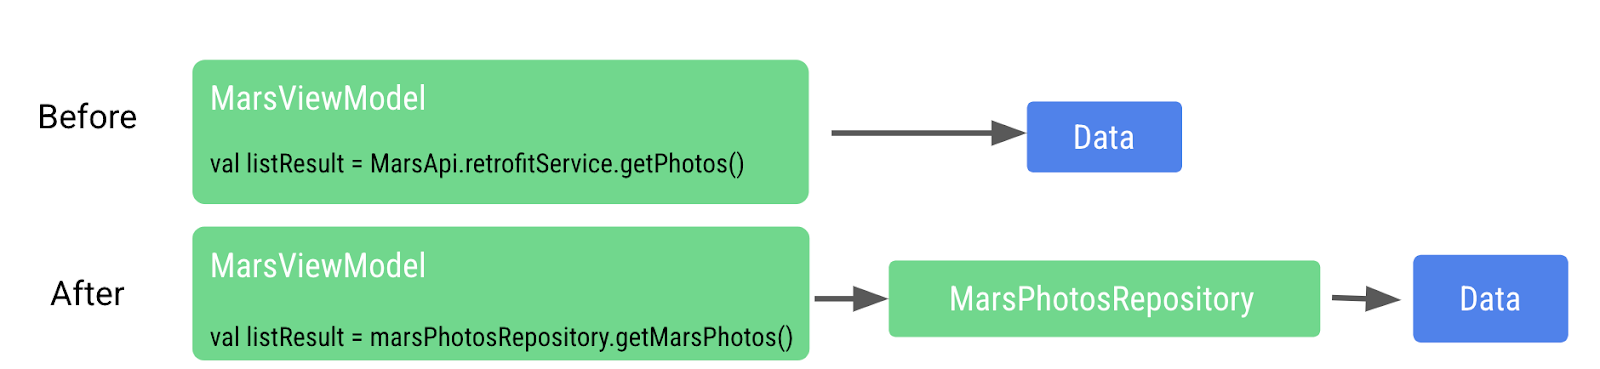 流程圖，顯示之前如何直接從 Viewmodel 存取資料層，現在則有火星相片存放區